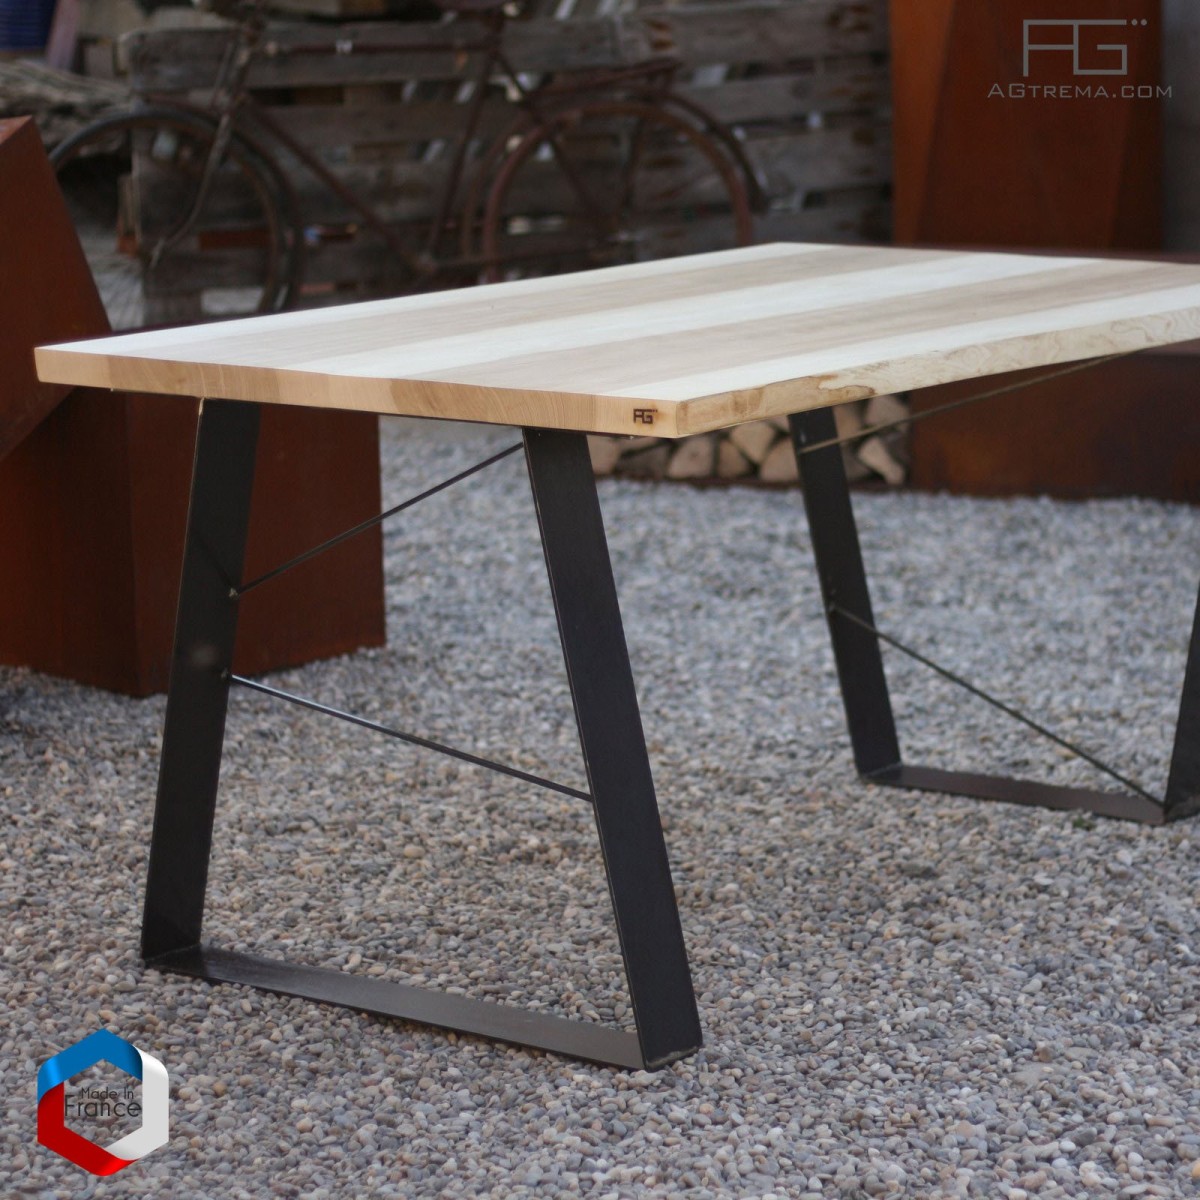 Table live-egde plateau bois massif et pieds acier made in france - AGtrema